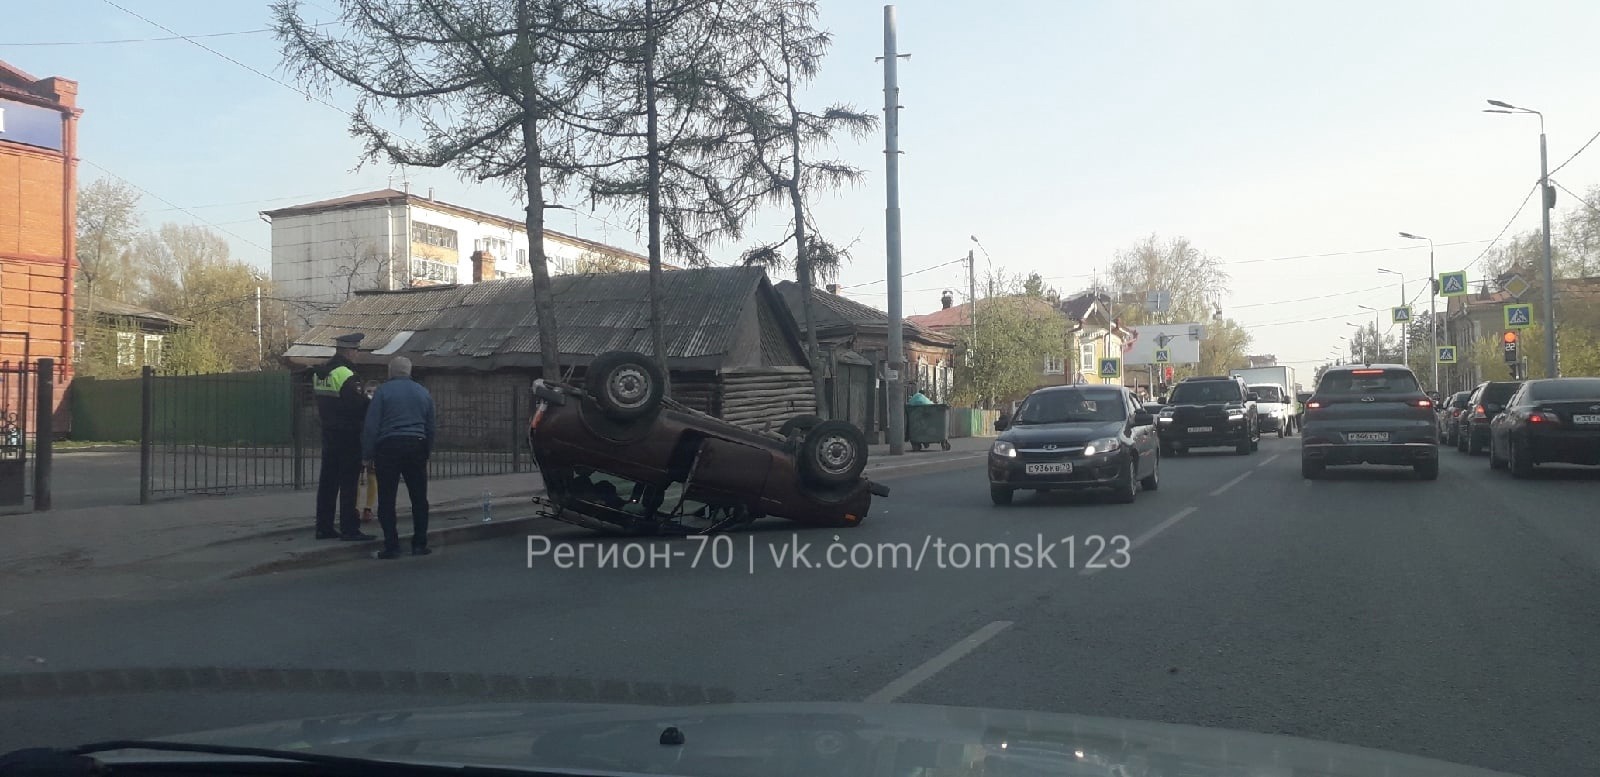 Автомобиль перевернулся на перекрестке в Томске: образовалась огромная пробка